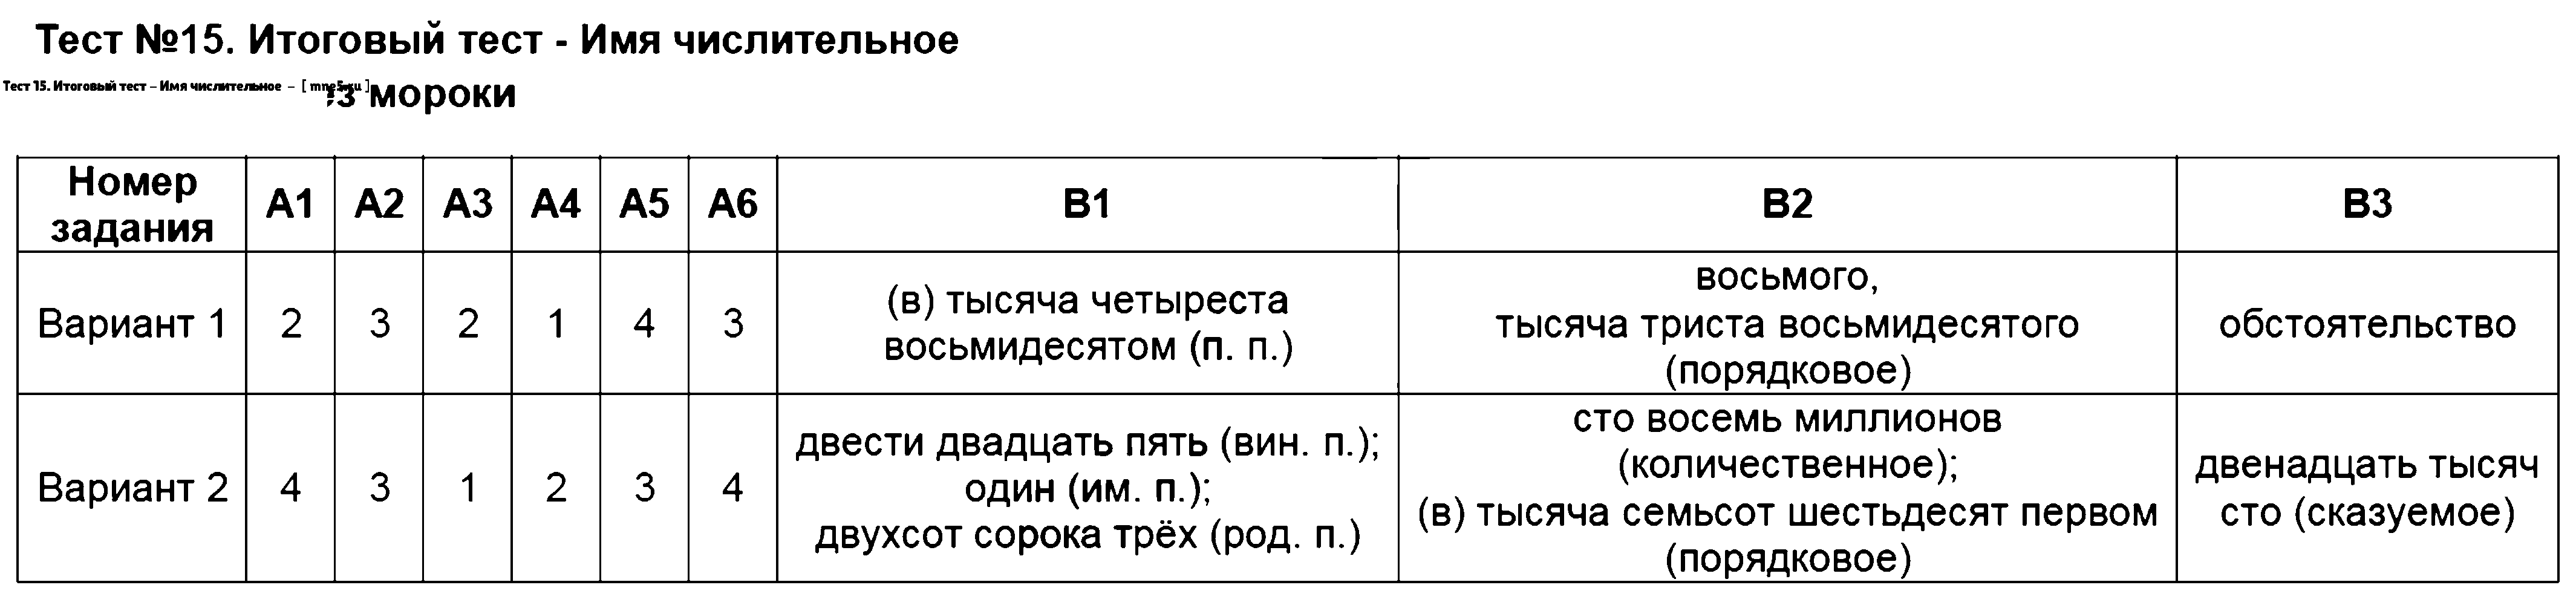 ГДЗ Русский язык 6 класс - Тест 15. Итоговый тест - Имя числительное